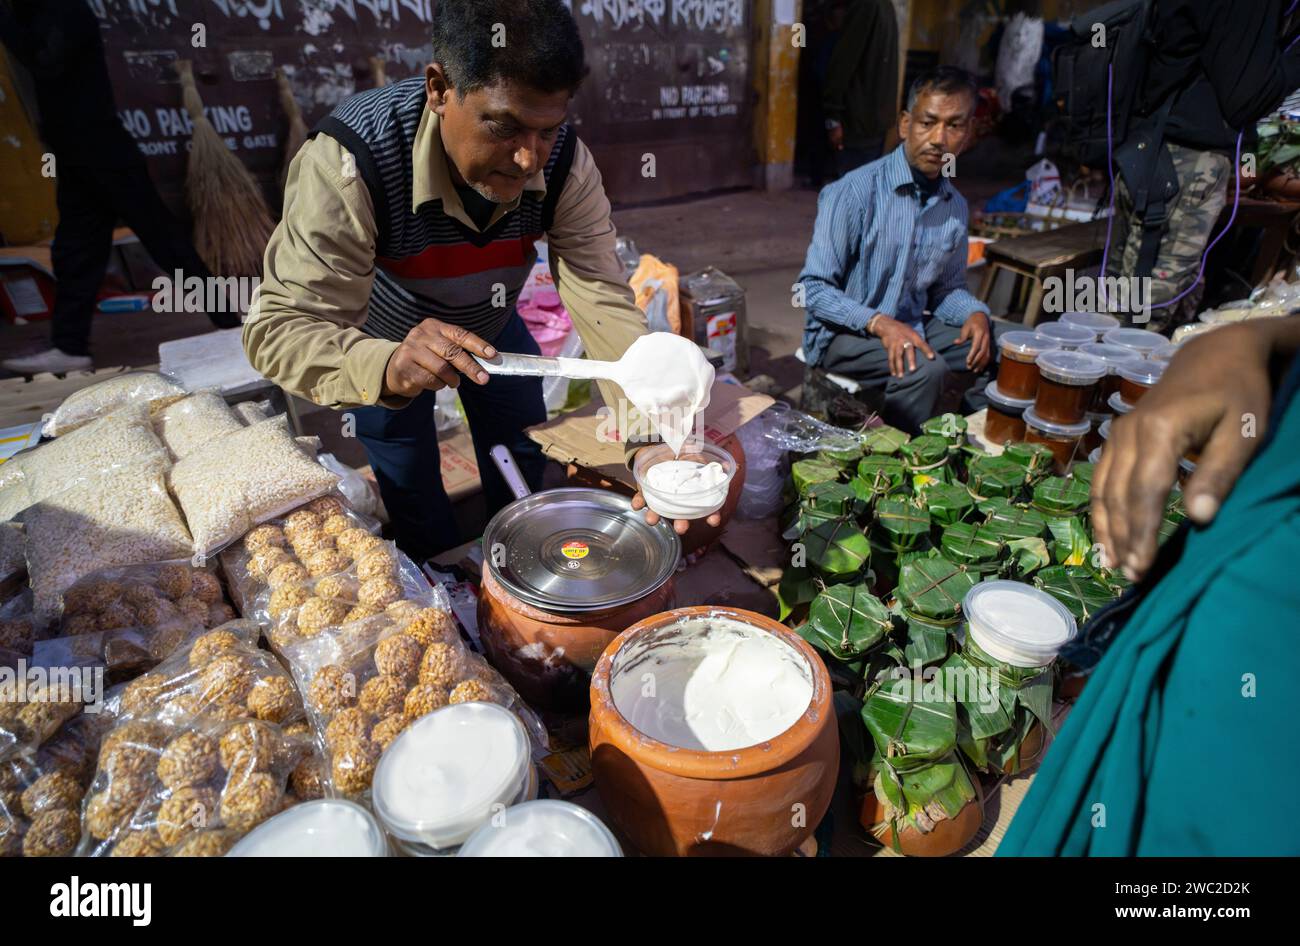 Vendeur vendant de la nourriture traditionnelle assamaise sur un marché, avant le festival Magh Bihu à Guwahati, Assam, Inde, le 13 janvier 2024. Magh Bihu marque la fin de la saison de récolte, en particulier la récolte du paddy, et le début du mois assamais de Magh. Le festival tombe généralement à la mi-janvier, et c'est un moment de joie et de festin. Les gens expriment leur gratitude pour la récolte abondante et prient pour la prospérité dans les saisons à venir. Crédit : David Talukdar/Alamy Live News Banque D'Images